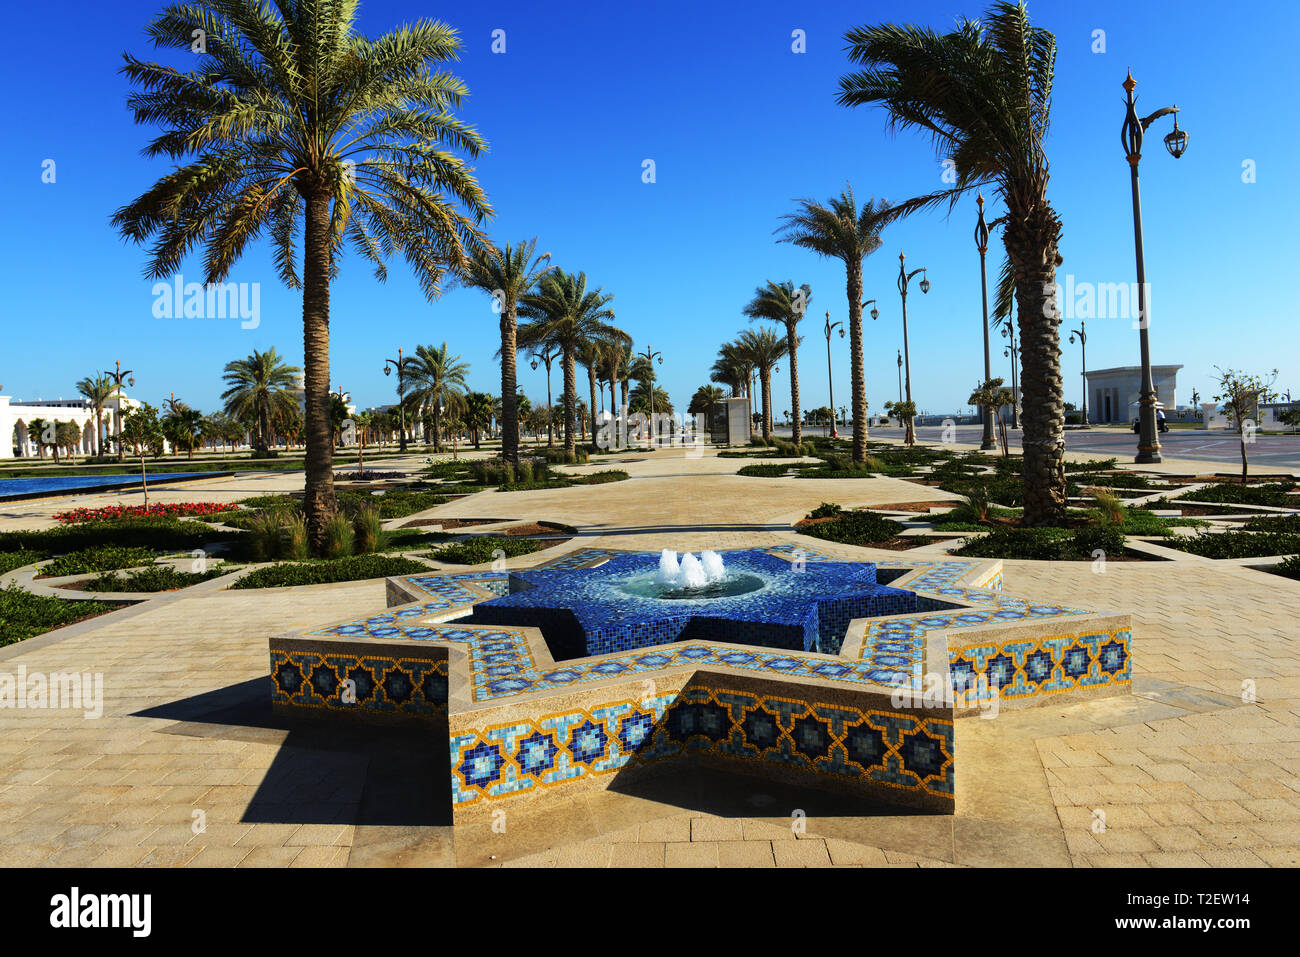 La hermosa Qasr Al Watan - Palacio Presidencial en Abu Dhabi, Emiratos Árabes Unidos. Foto de stock